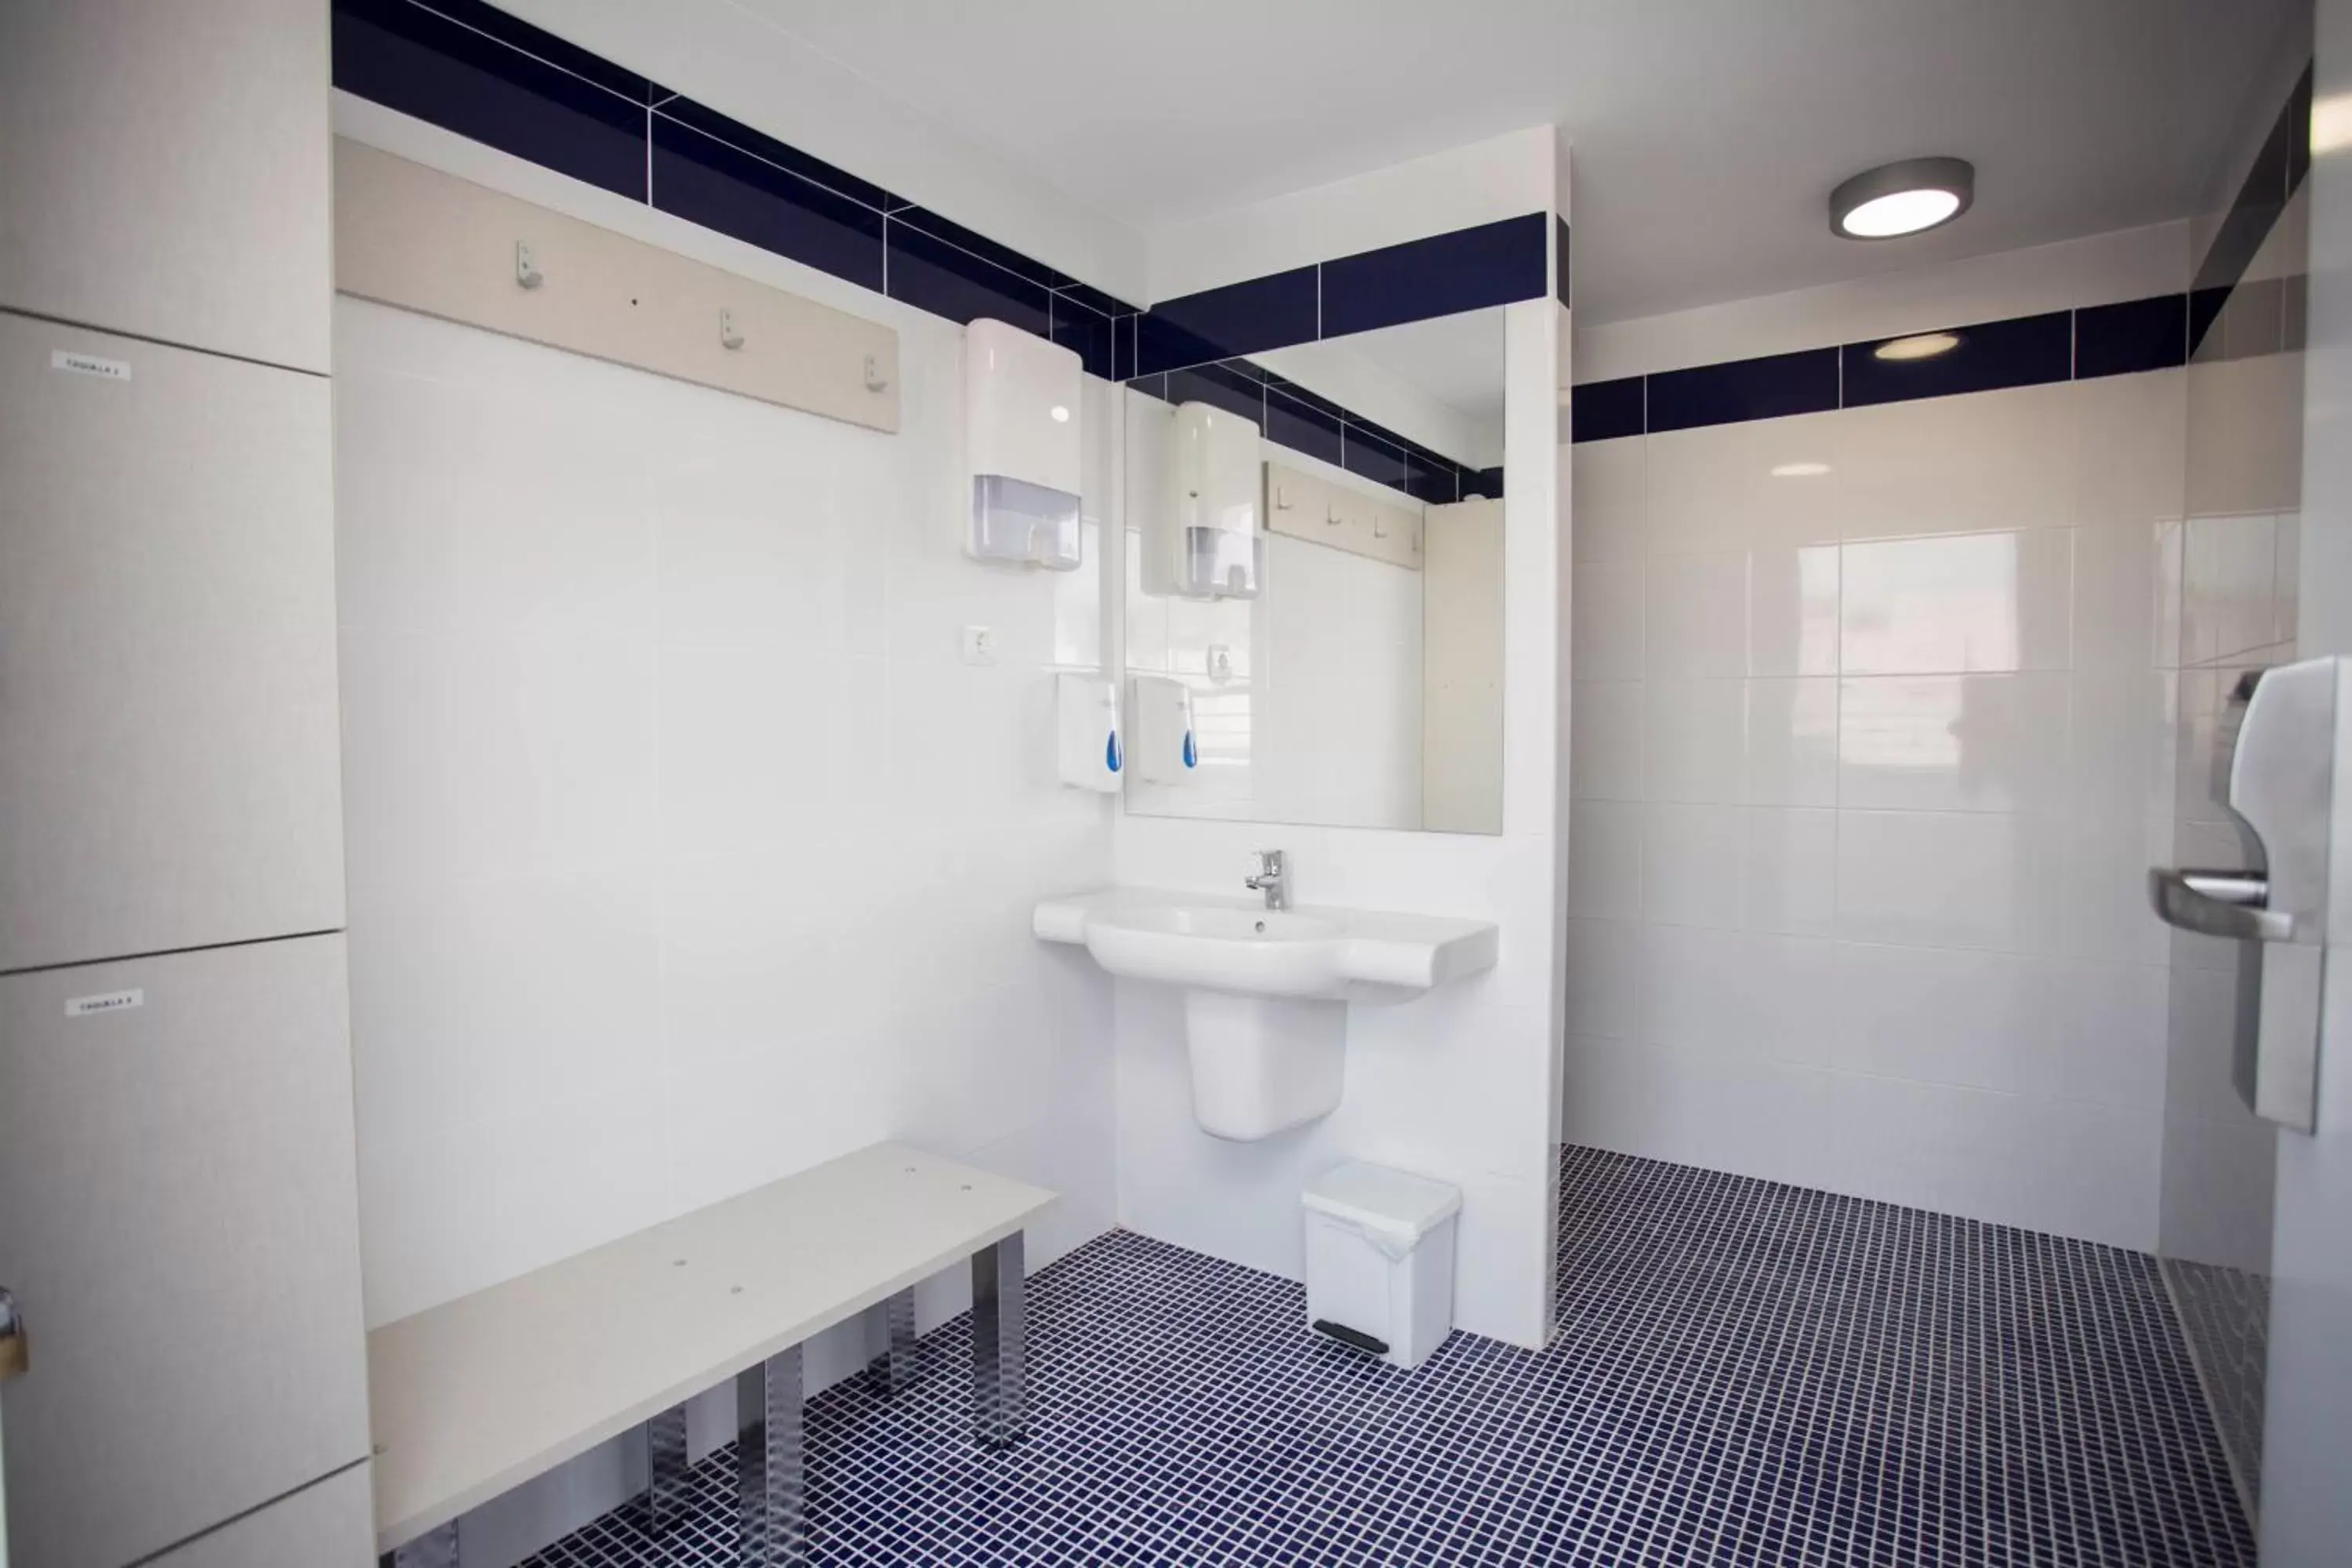 Area and facilities, Bathroom in Hotel Voramar